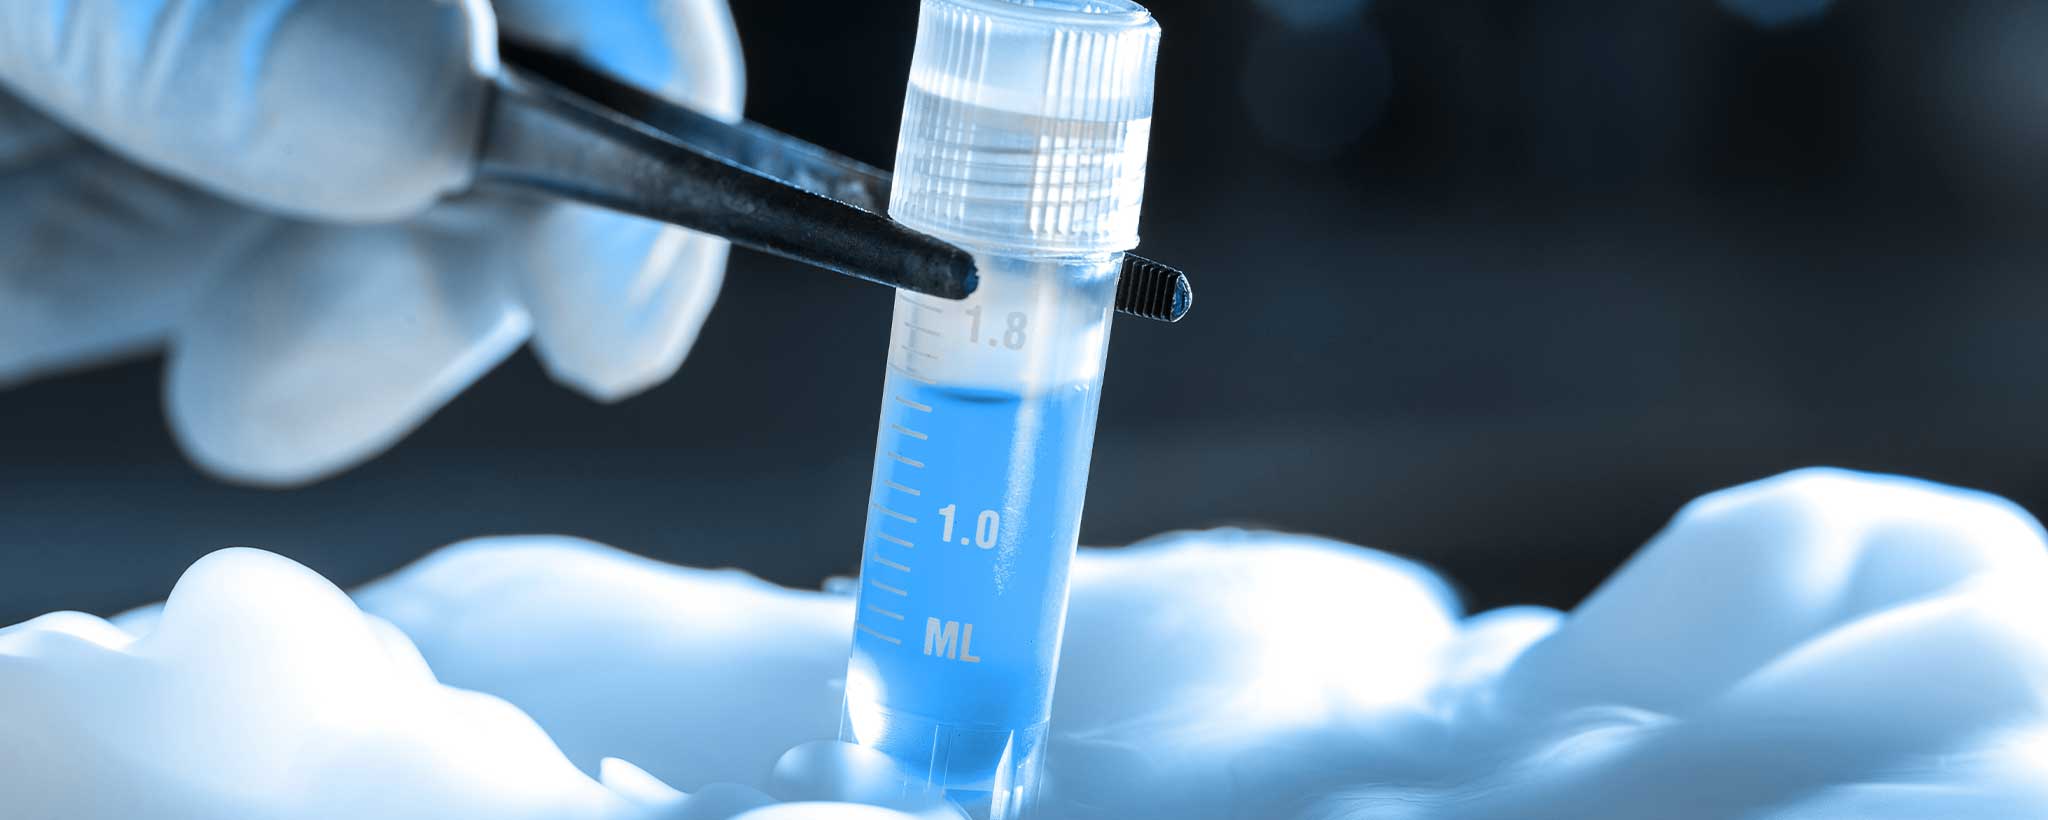 Tweezers removing IVF vial cryogenic storage